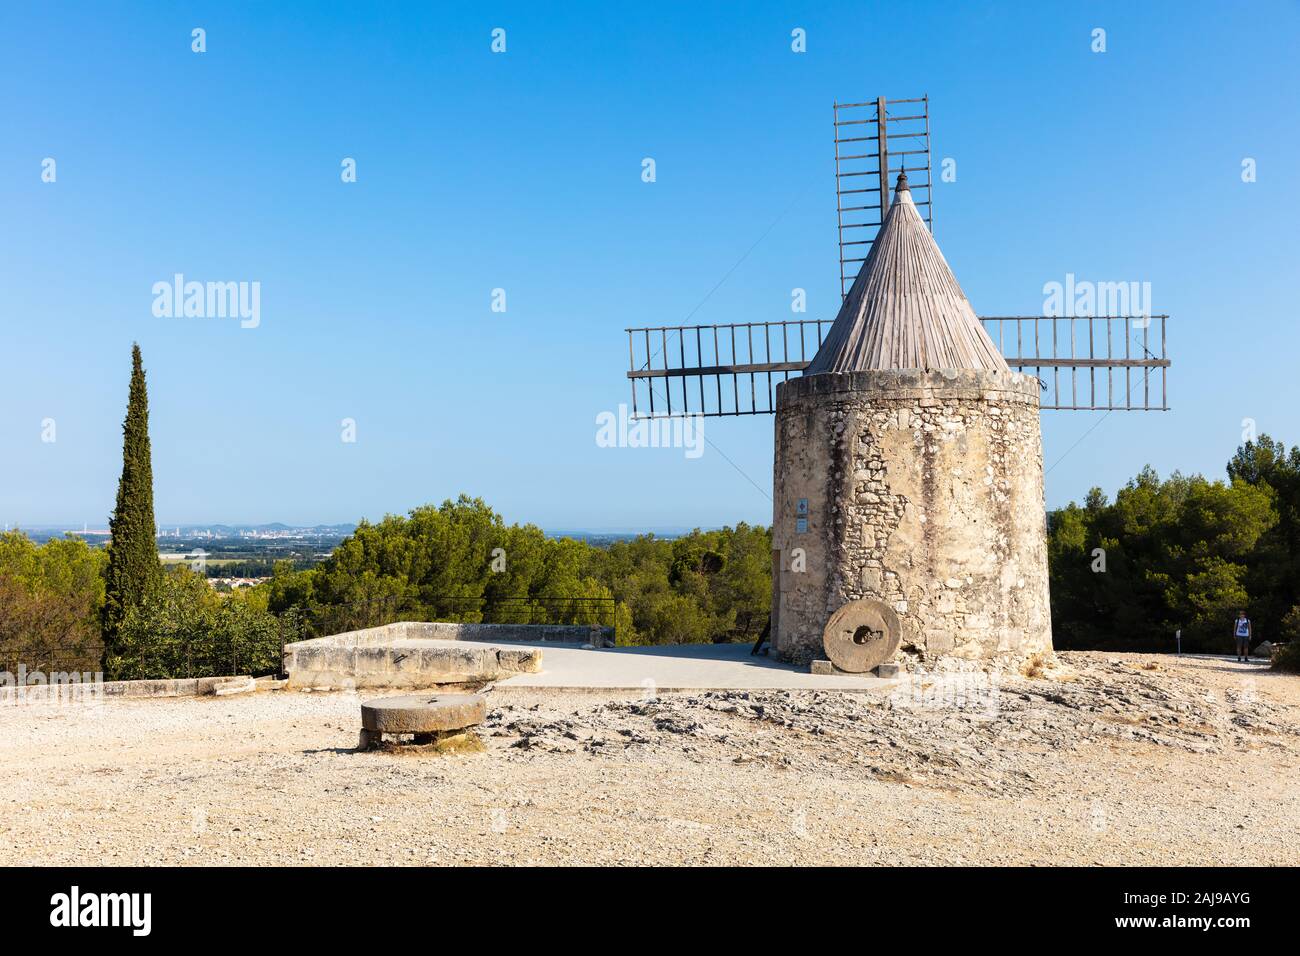 Una vista del Moulin de Daudet en Fontvieille / Provence (Francia). Este molino fue la antigua casa del famoso escritor francés Alphonse Daudet. Foto de stock